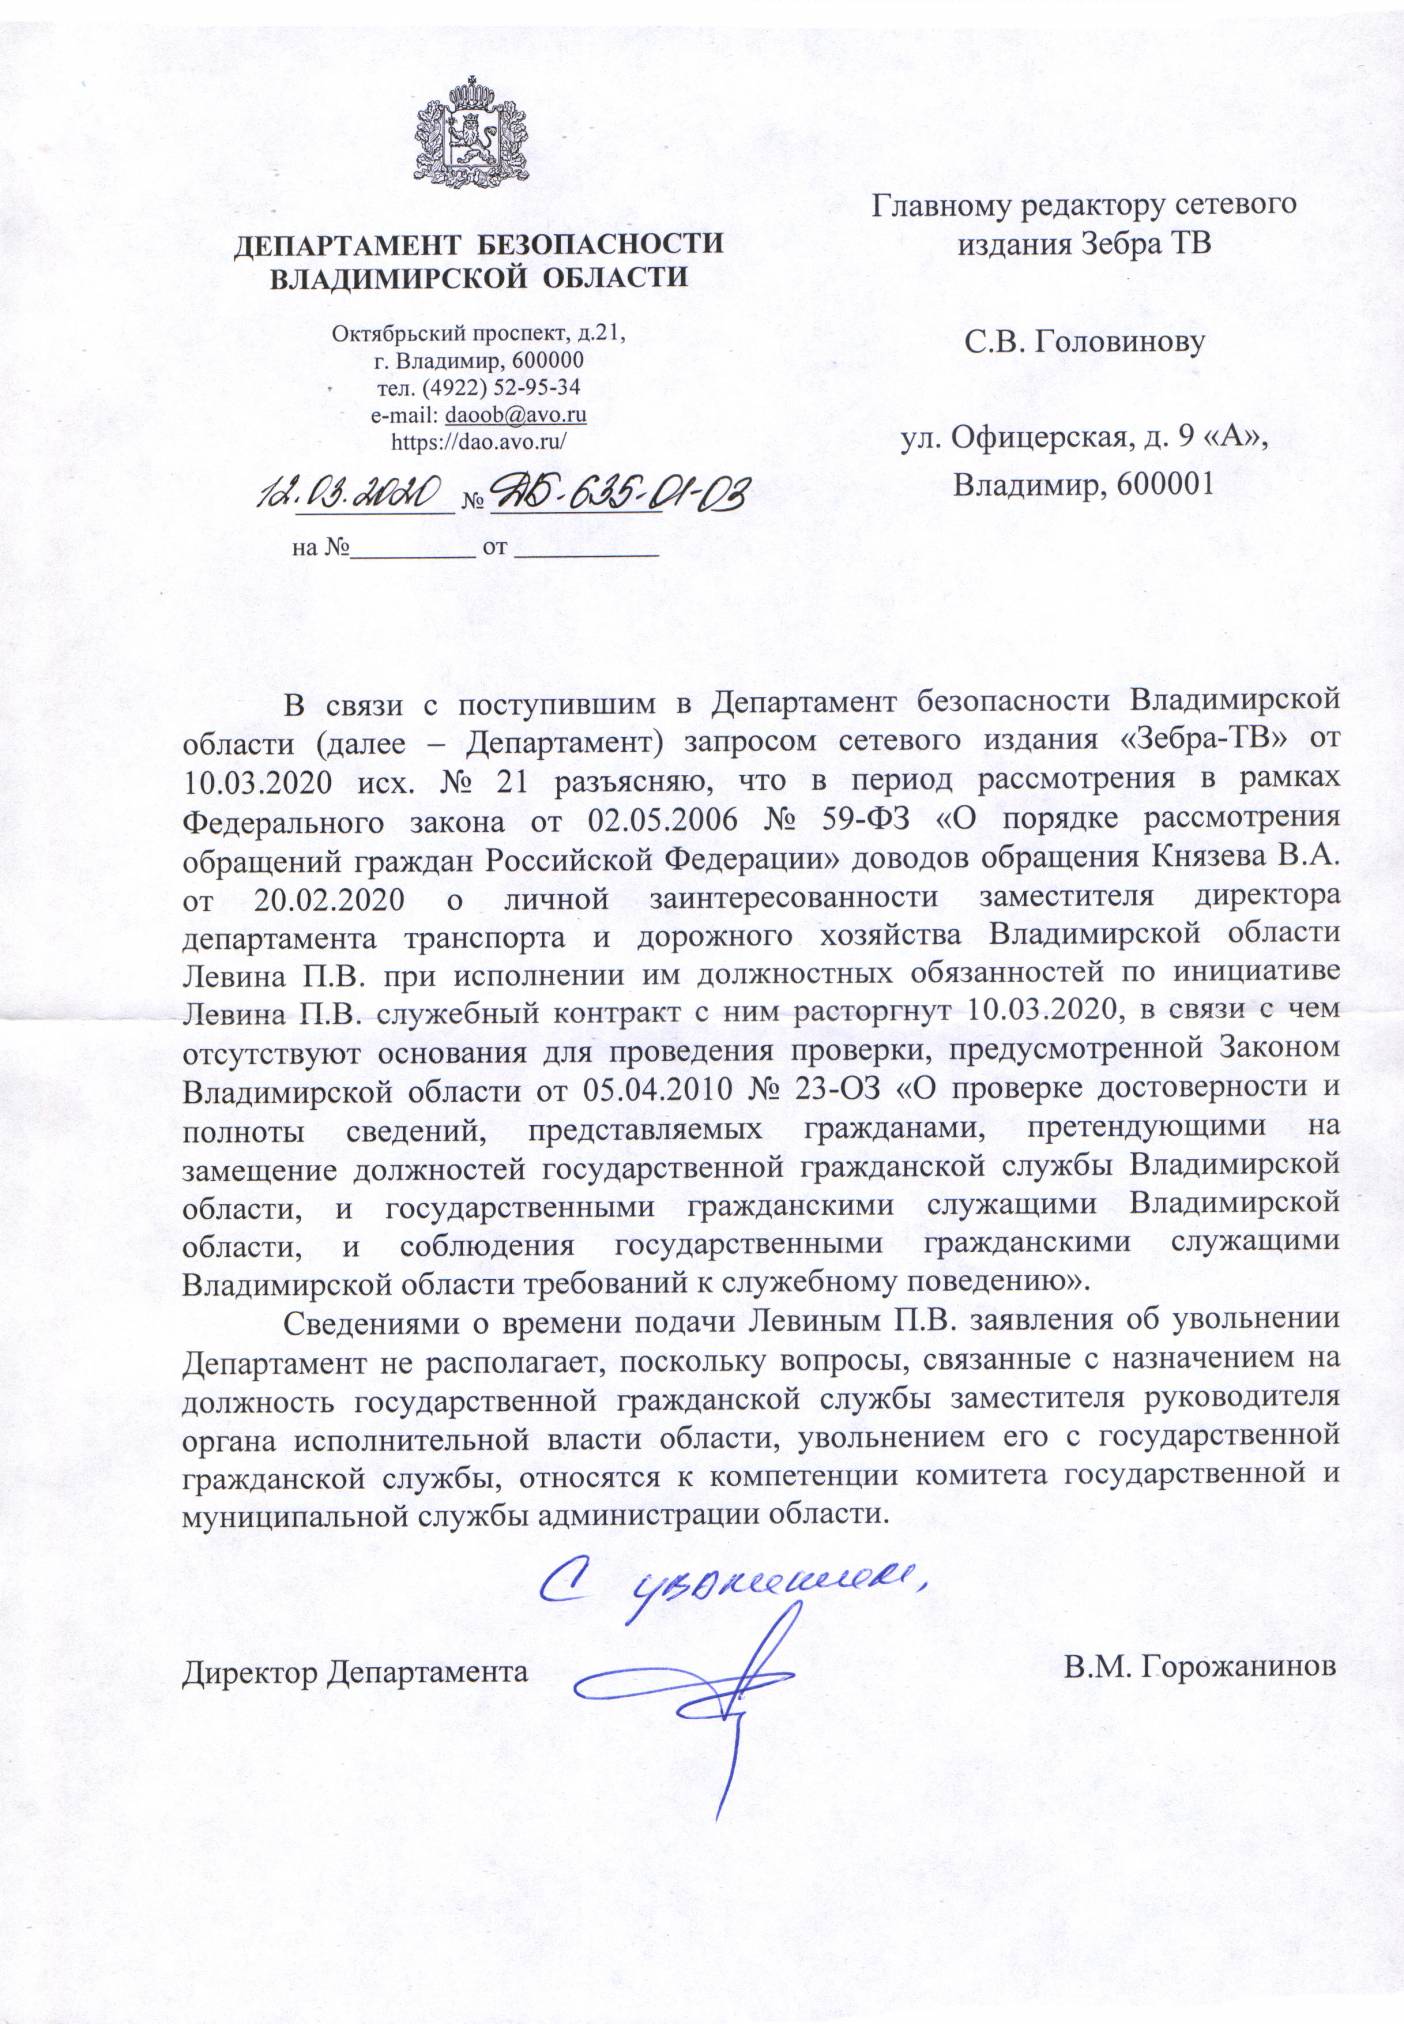 letter_Gorojaninov.jpg